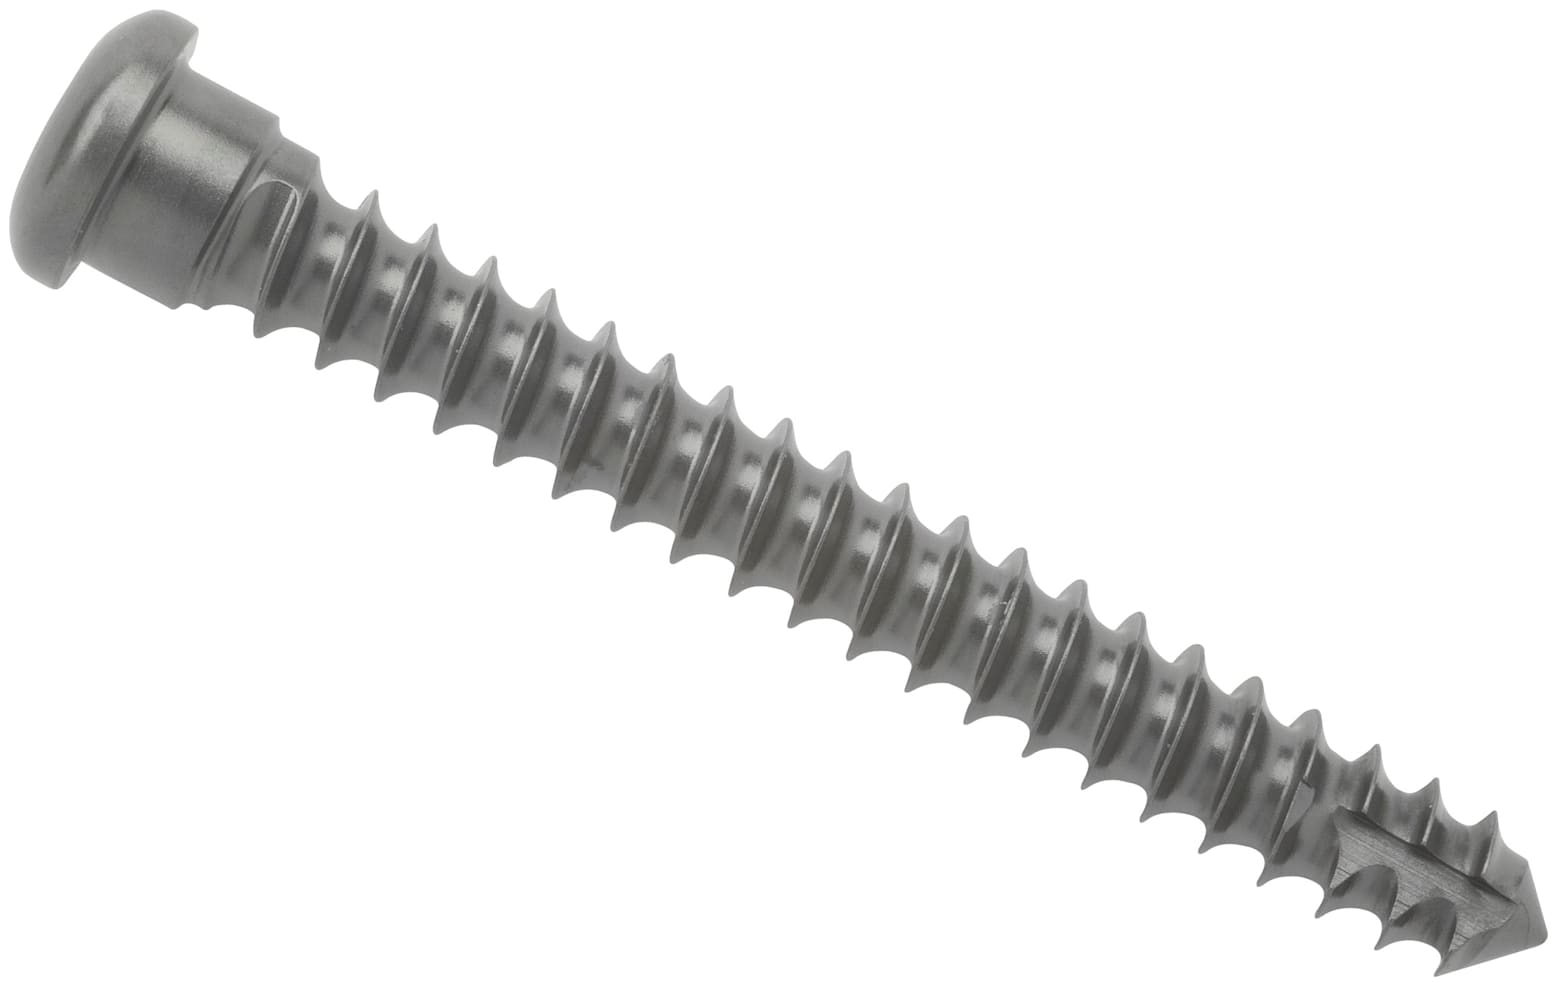 Cortical Screw, 3.5 mm x 34 mm